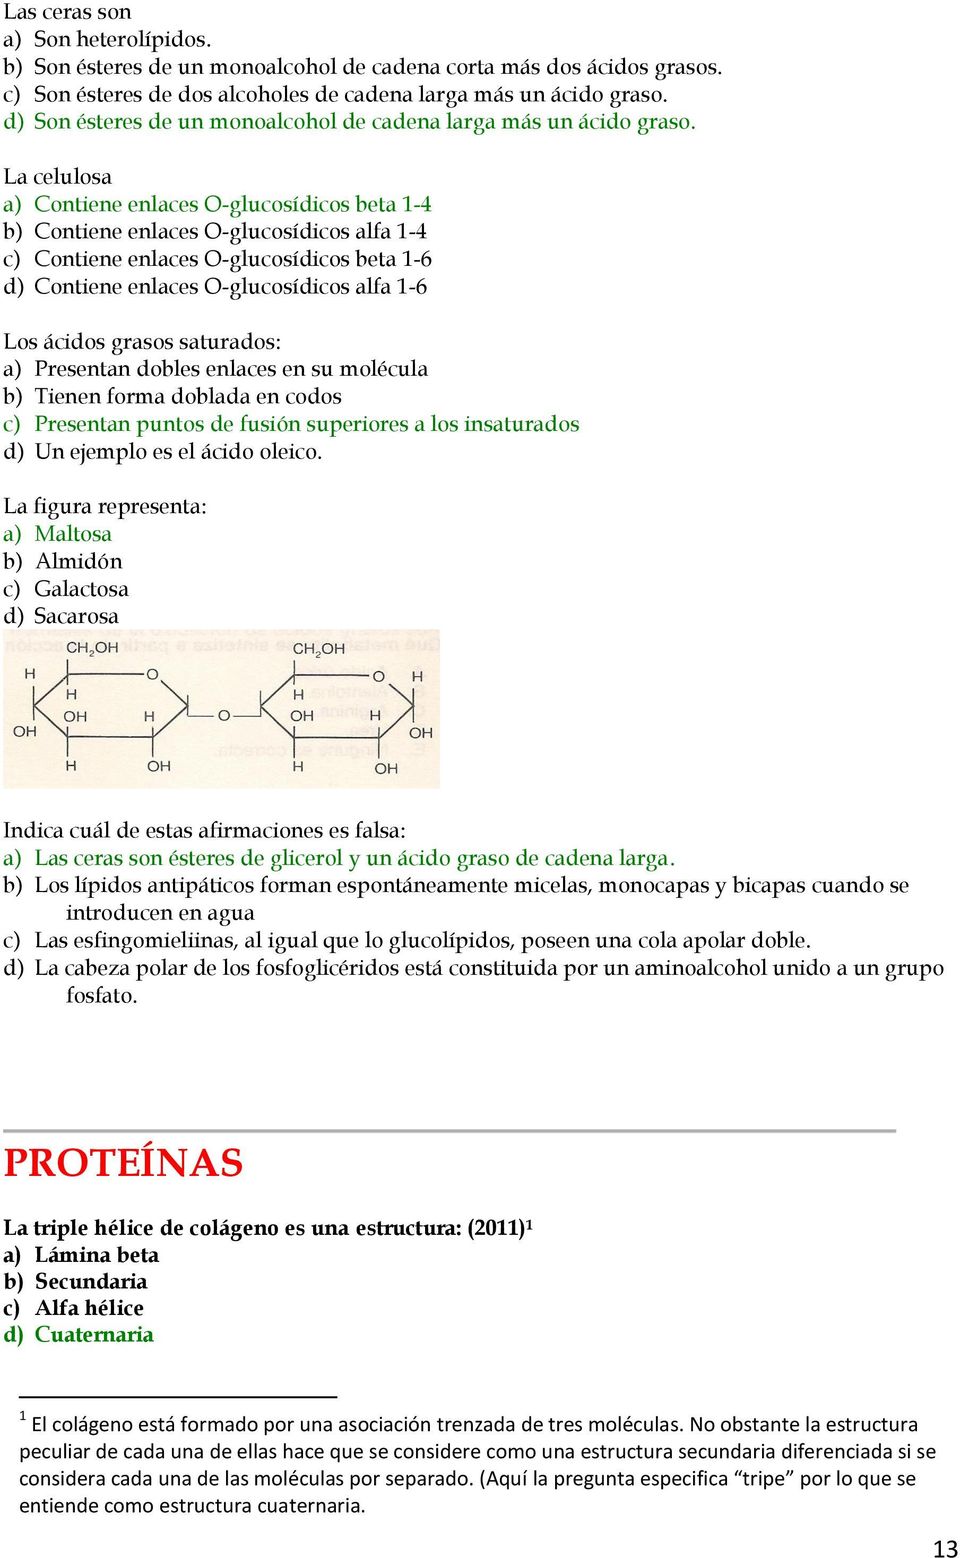 La celulosa a) Contiene enlaces O-glucosídicos beta 1-4 b) Contiene enlaces O-glucosídicos alfa 1-4 c) Contiene enlaces O-glucosídicos beta 1-6 d) Contiene enlaces O-glucosídicos alfa 1-6 Los ácidos